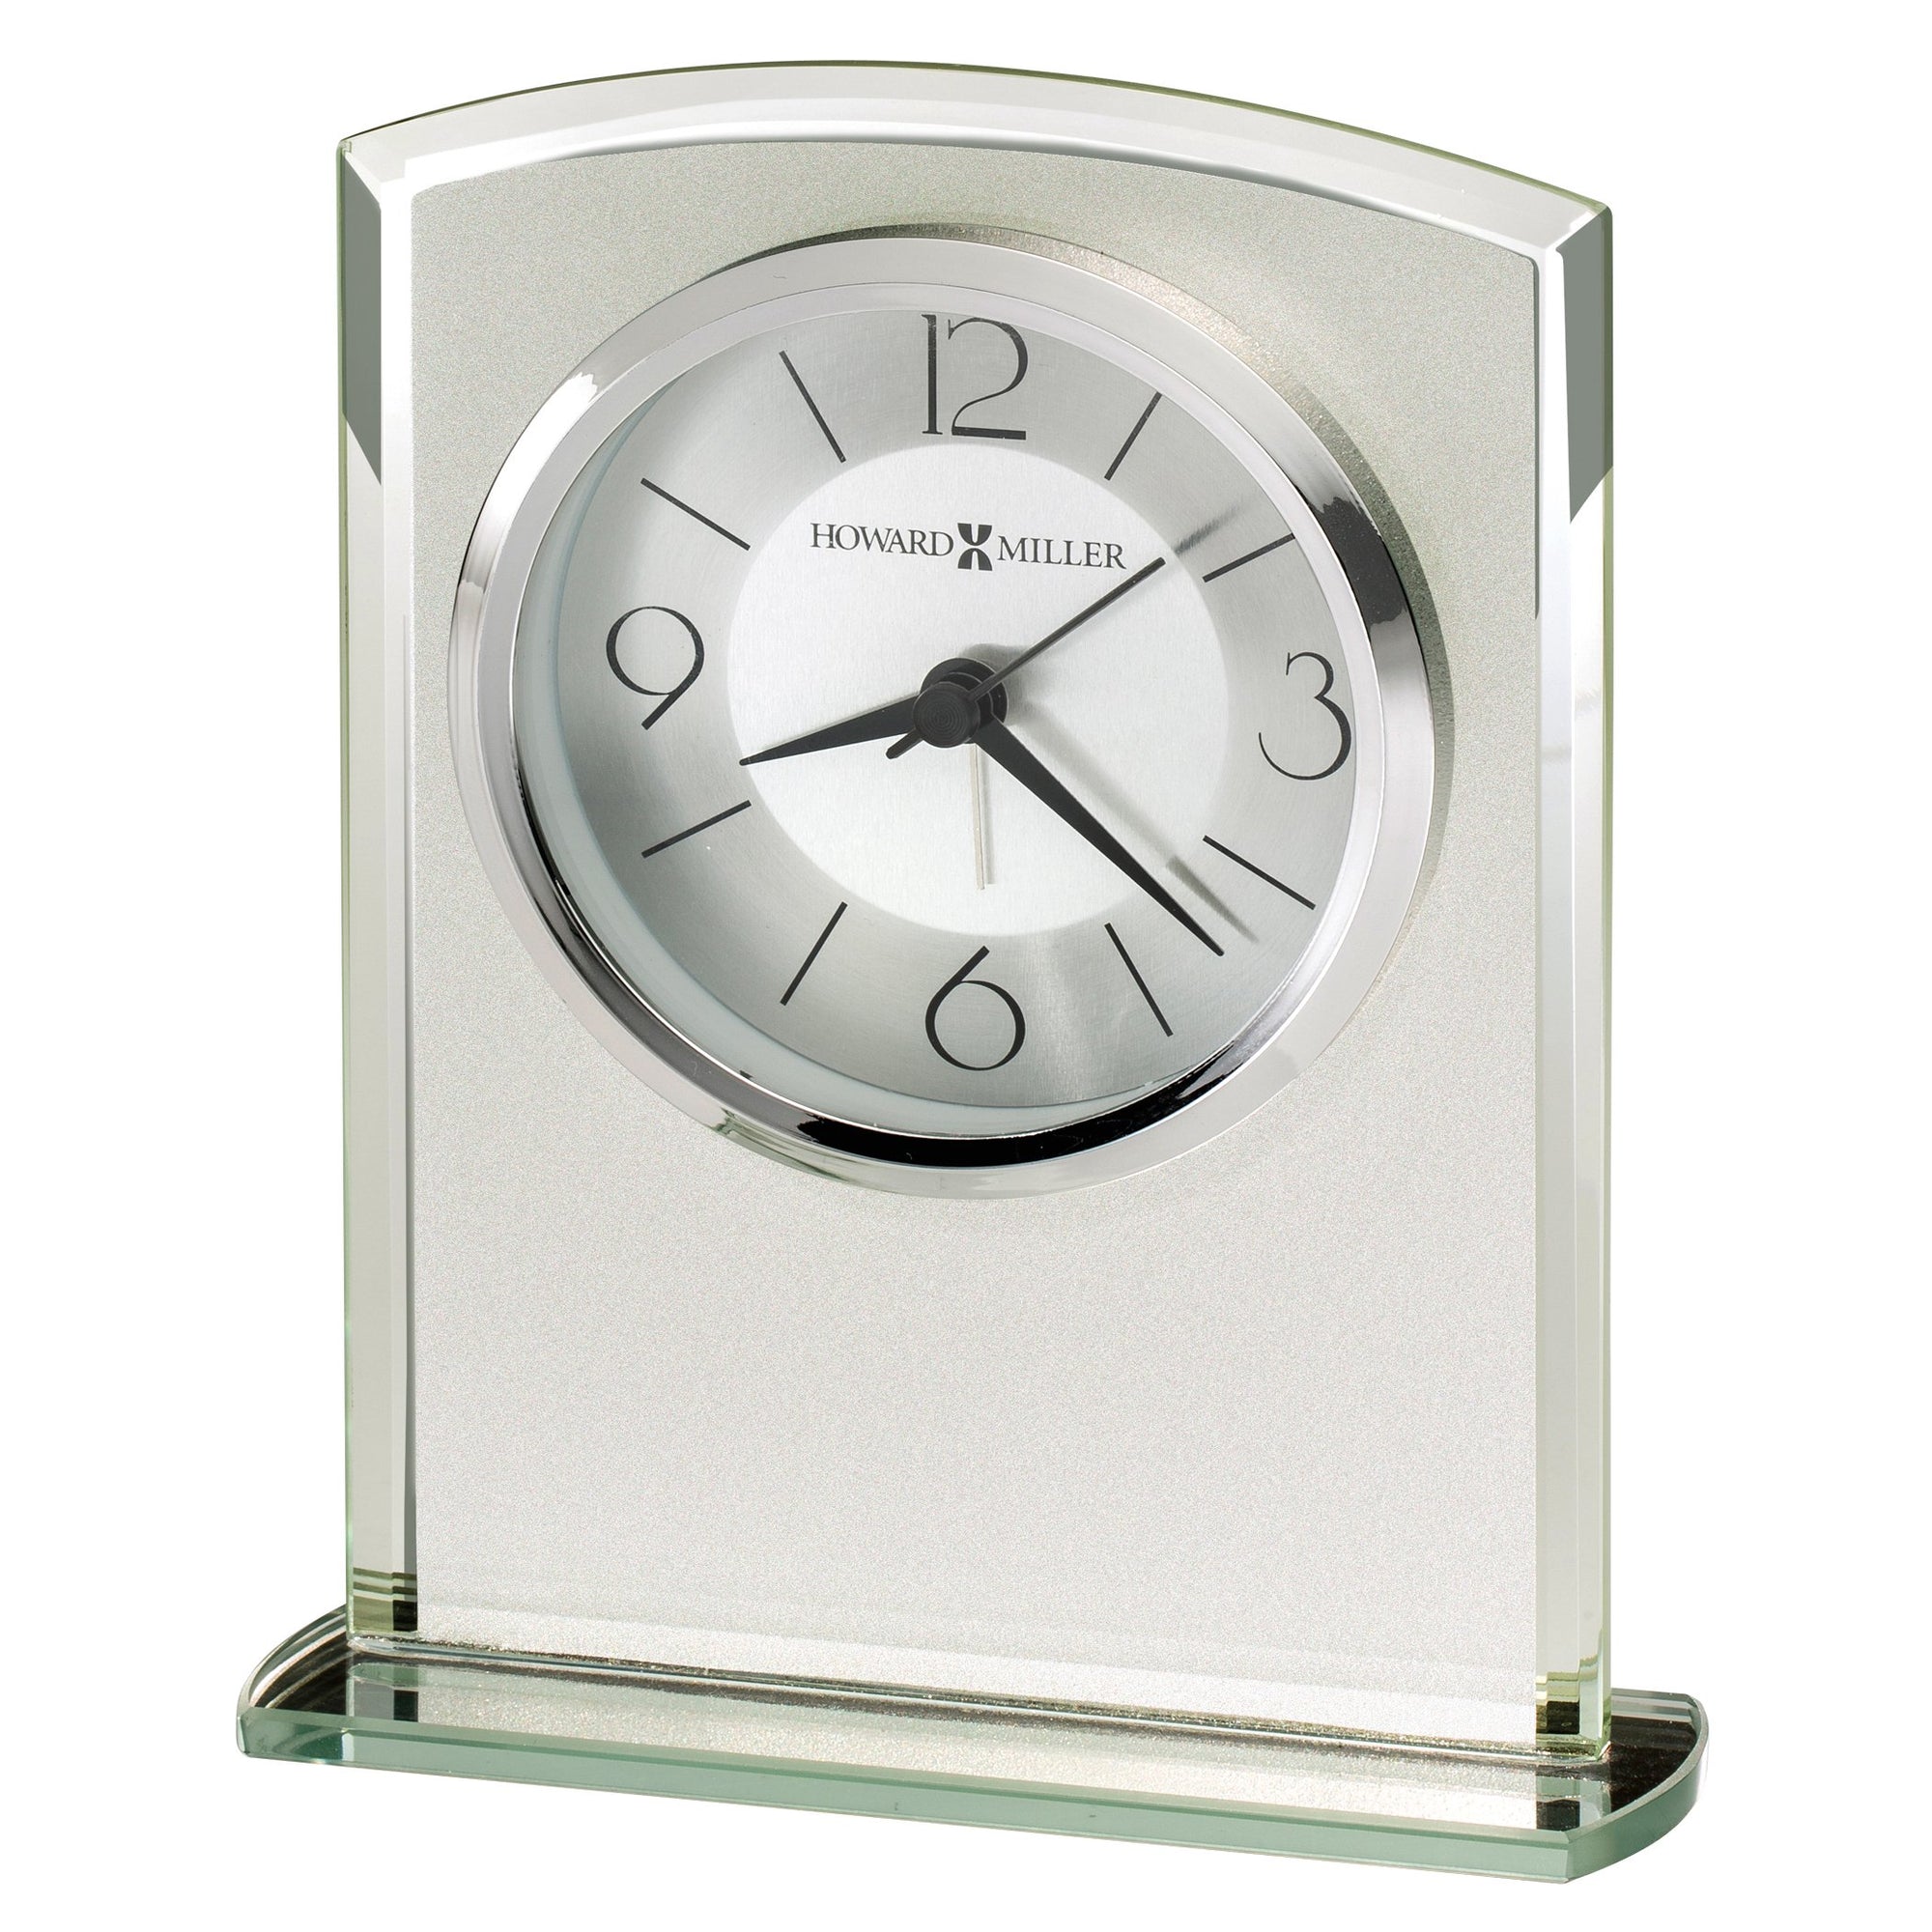 Howard Miller Glamour Table Clock 645771 - Premier Clocks